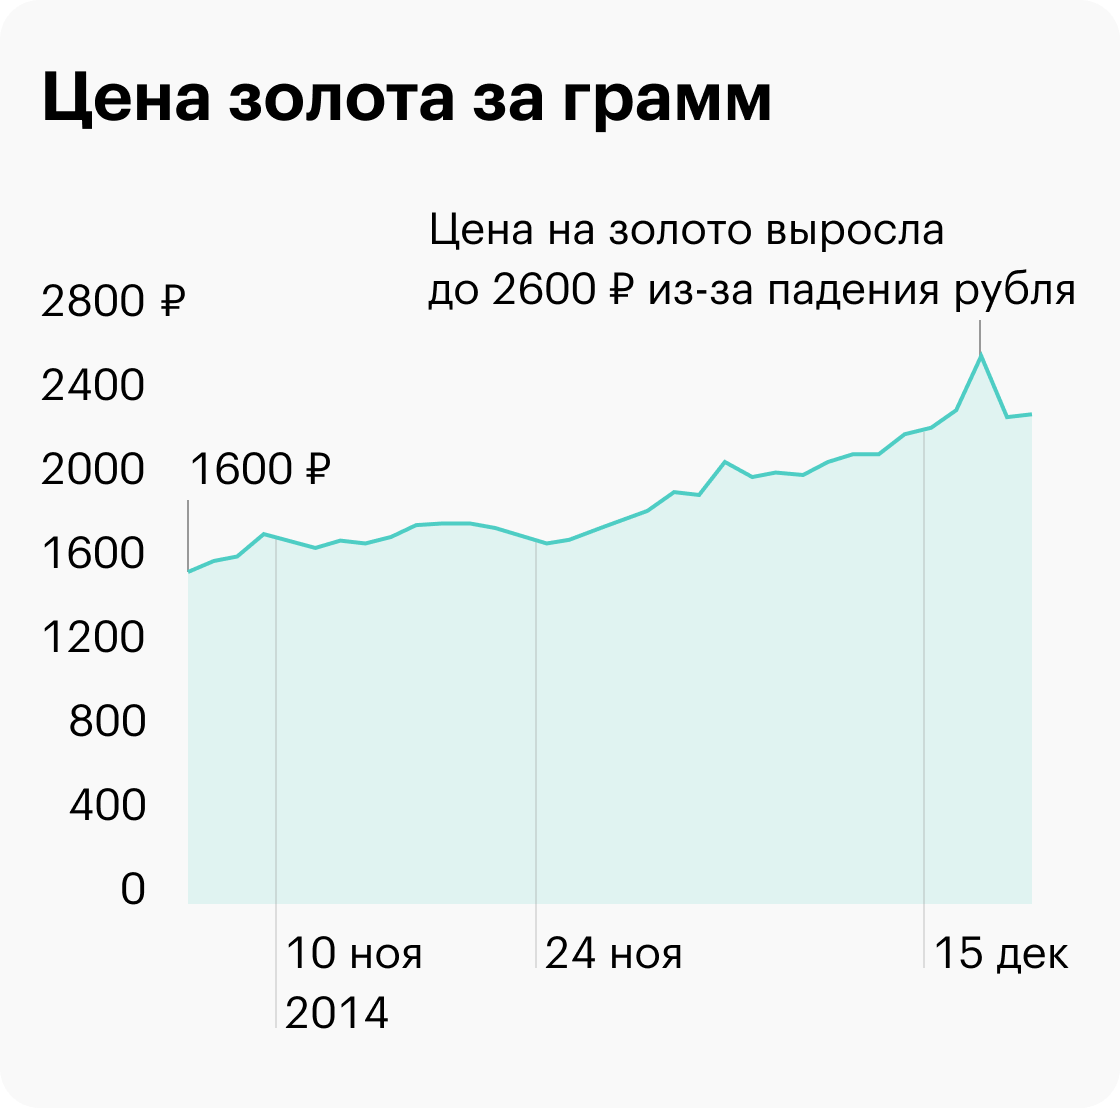 Так скакнула цена на золото у Центробанка из-за падения рубля в конце 2014&nbsp;года. По данным «Инвестфандс»